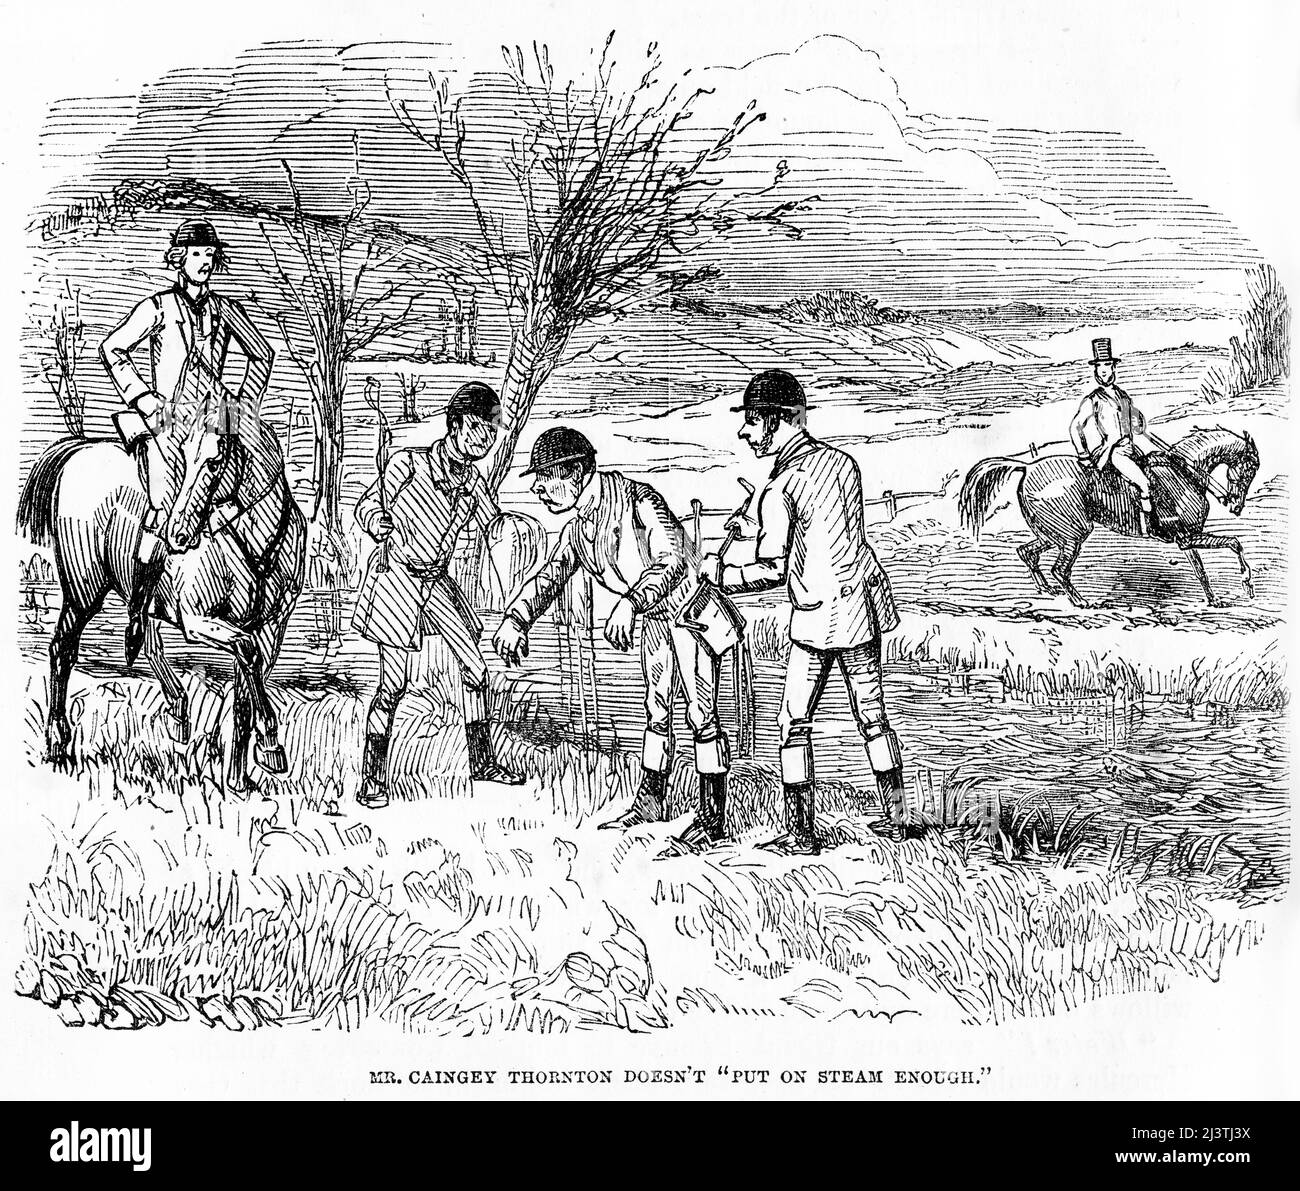 Un groupe de chasseurs de renards se plaignent de la façon dont M. Caingey Thornton ne « met pas assez de vapeur ». Gravure en acier par John Leech de la tournée sportive de M. Sponge de Robert Smith Surtees, vers 1850 Banque D'Images